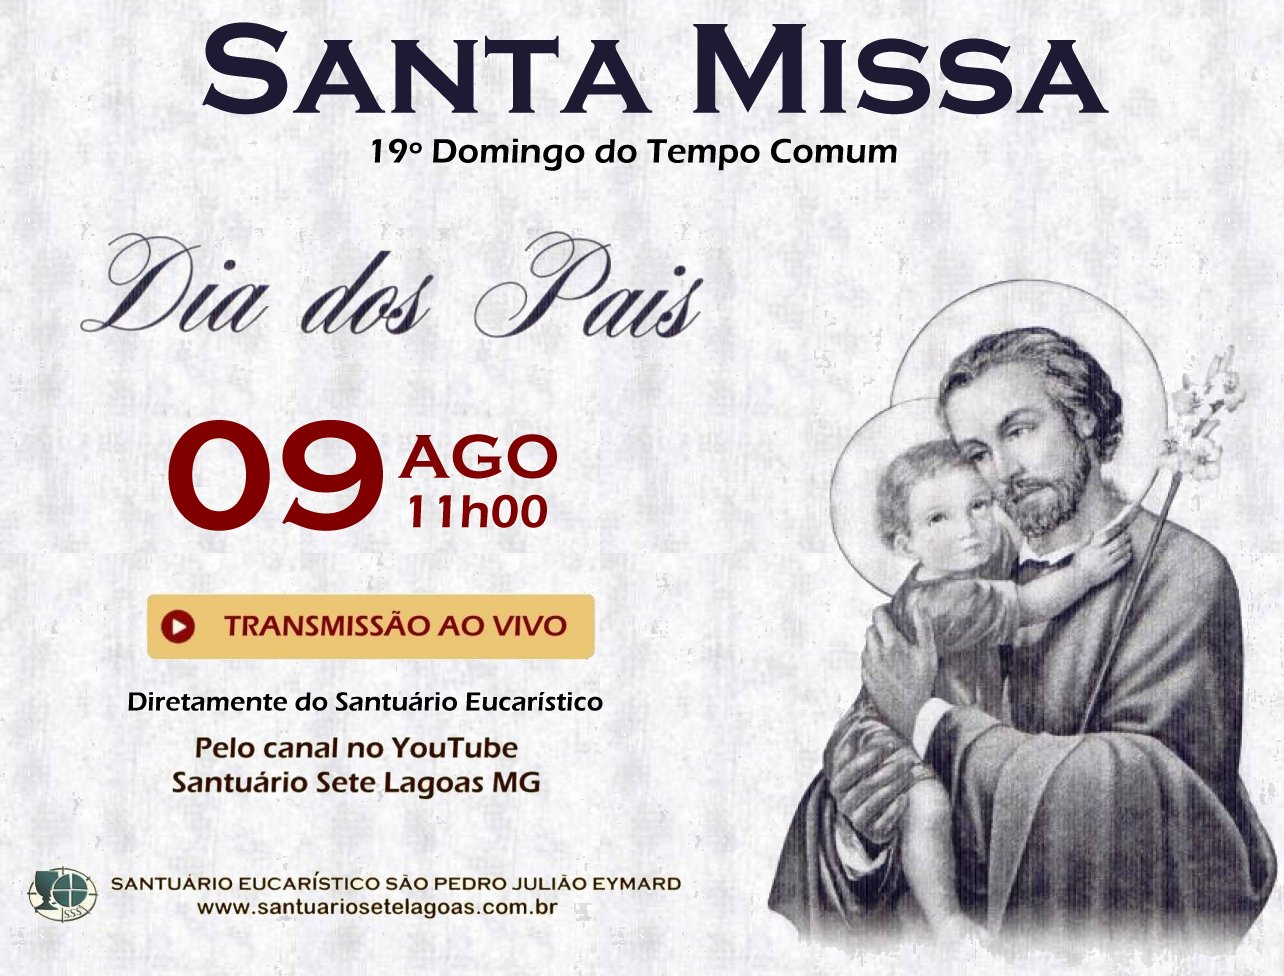 Santa Missa com transmissão ao vivo 09/08. Participe!